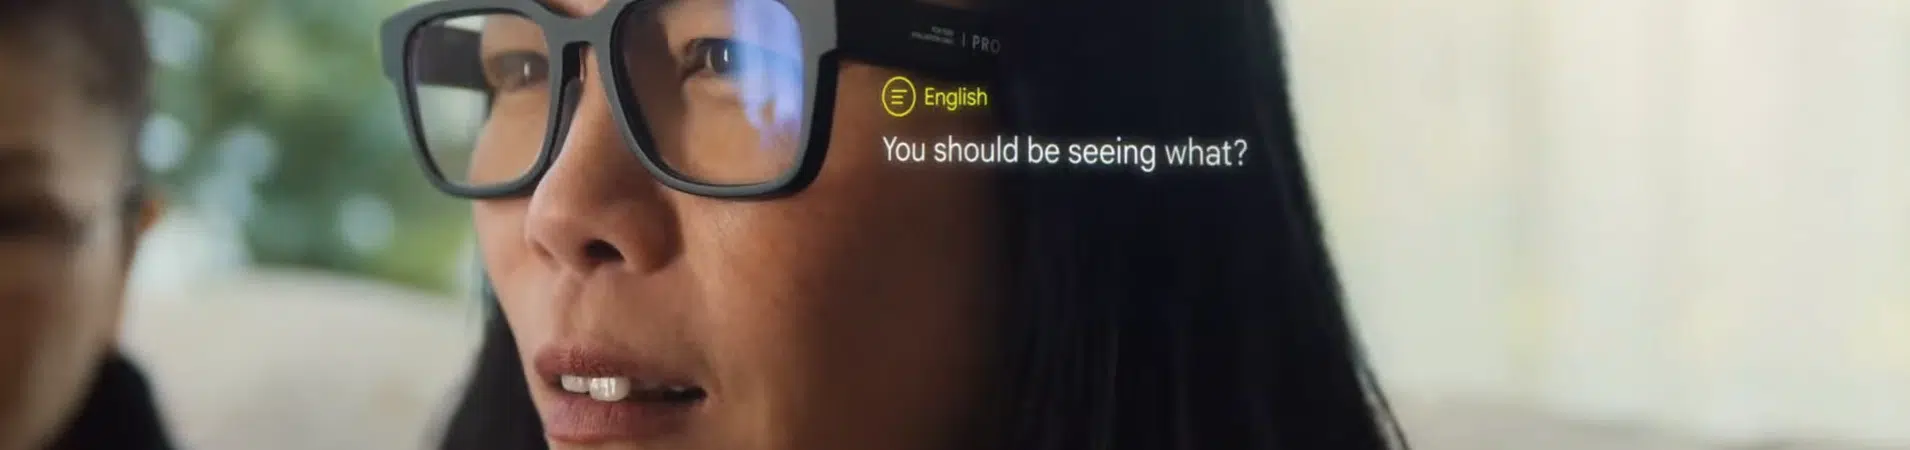 Google mostra óculos inteligente capaz de traduzir conversas em tempo real